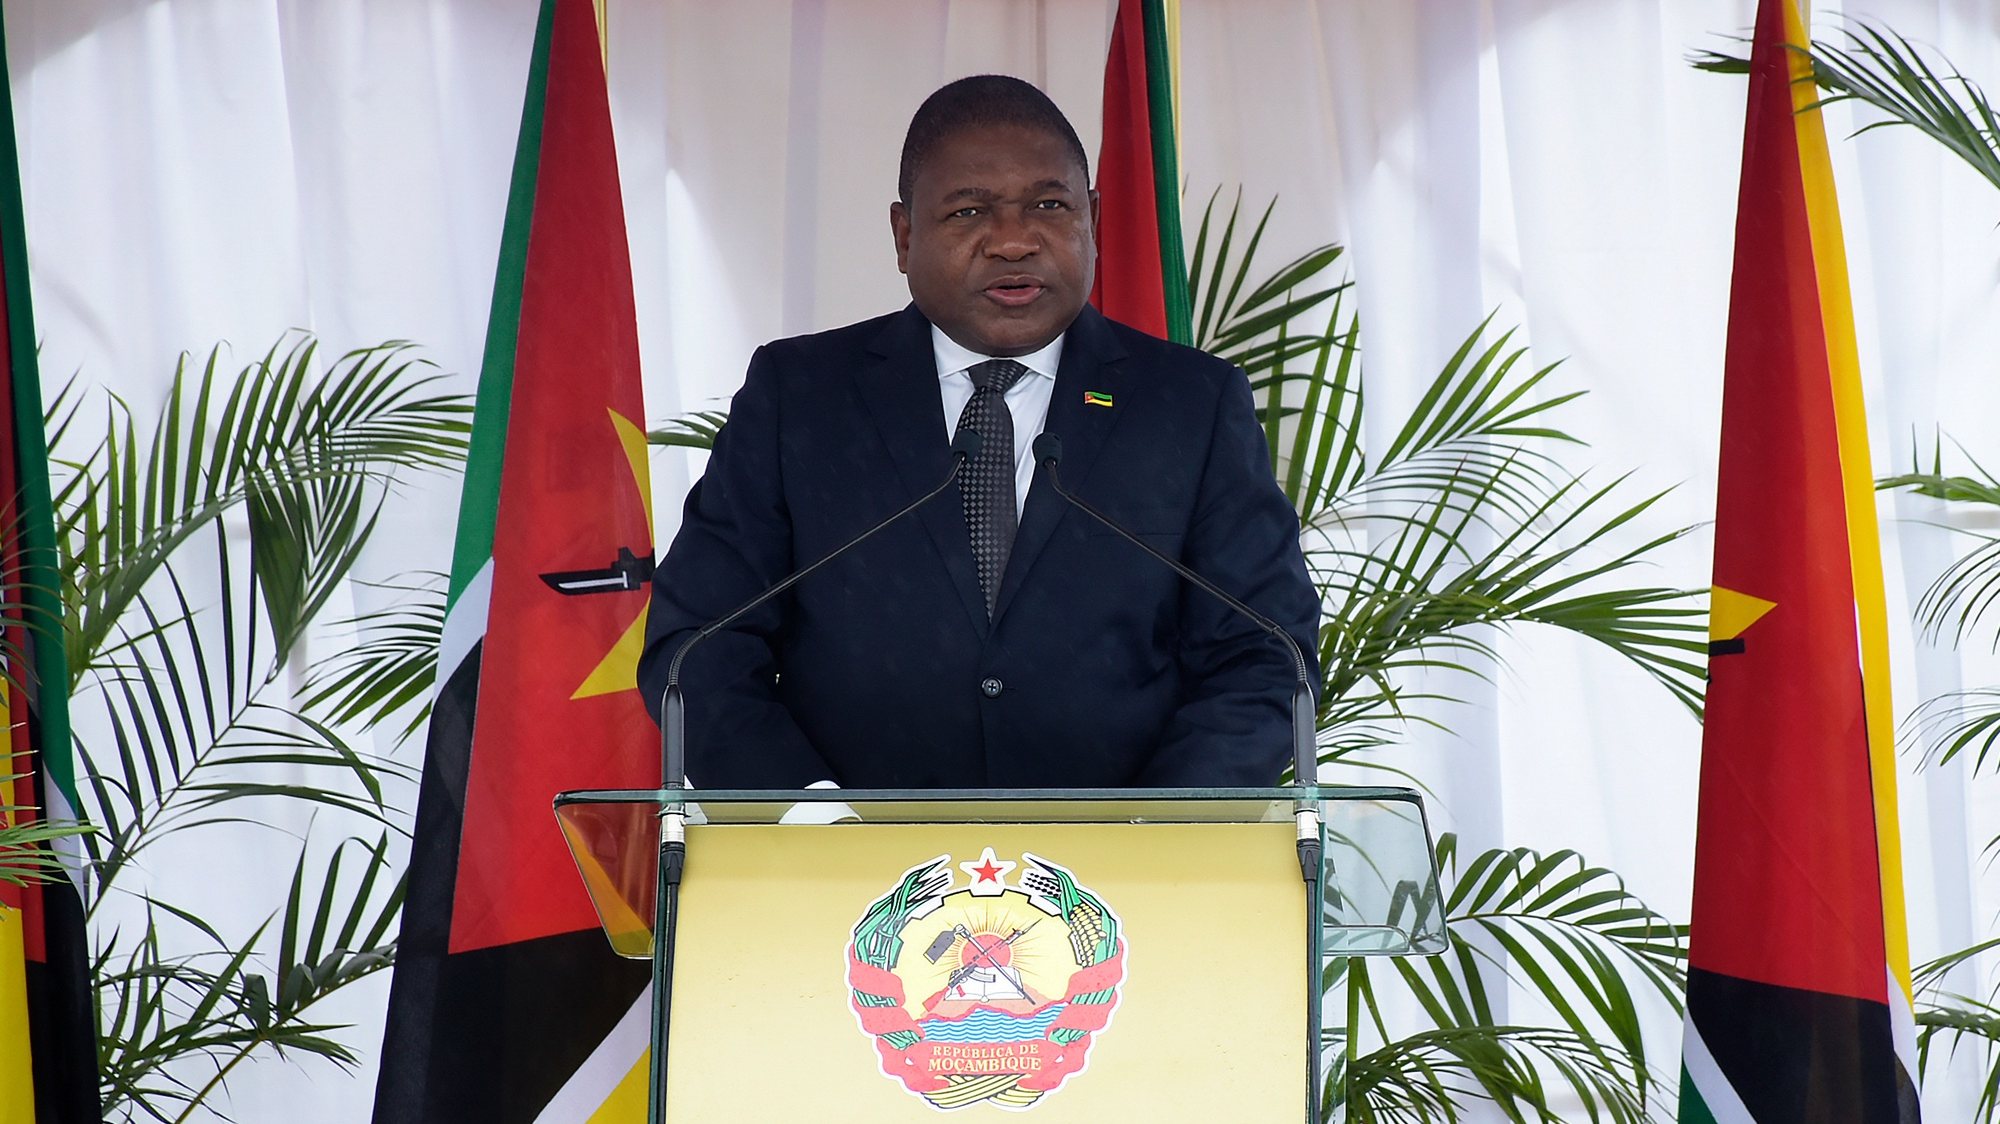 O Presidente da República de Moçambique, Filipe Nyusi, discursa durante as cerimónias de comemoração do Dia dos Heróis Nacionais, em Maputo, Moçambique, 03 de fevereiro 2021. PRESIDÊNCIA DA REPÚBLICA DE MOÇAMBIQUE/LUSA